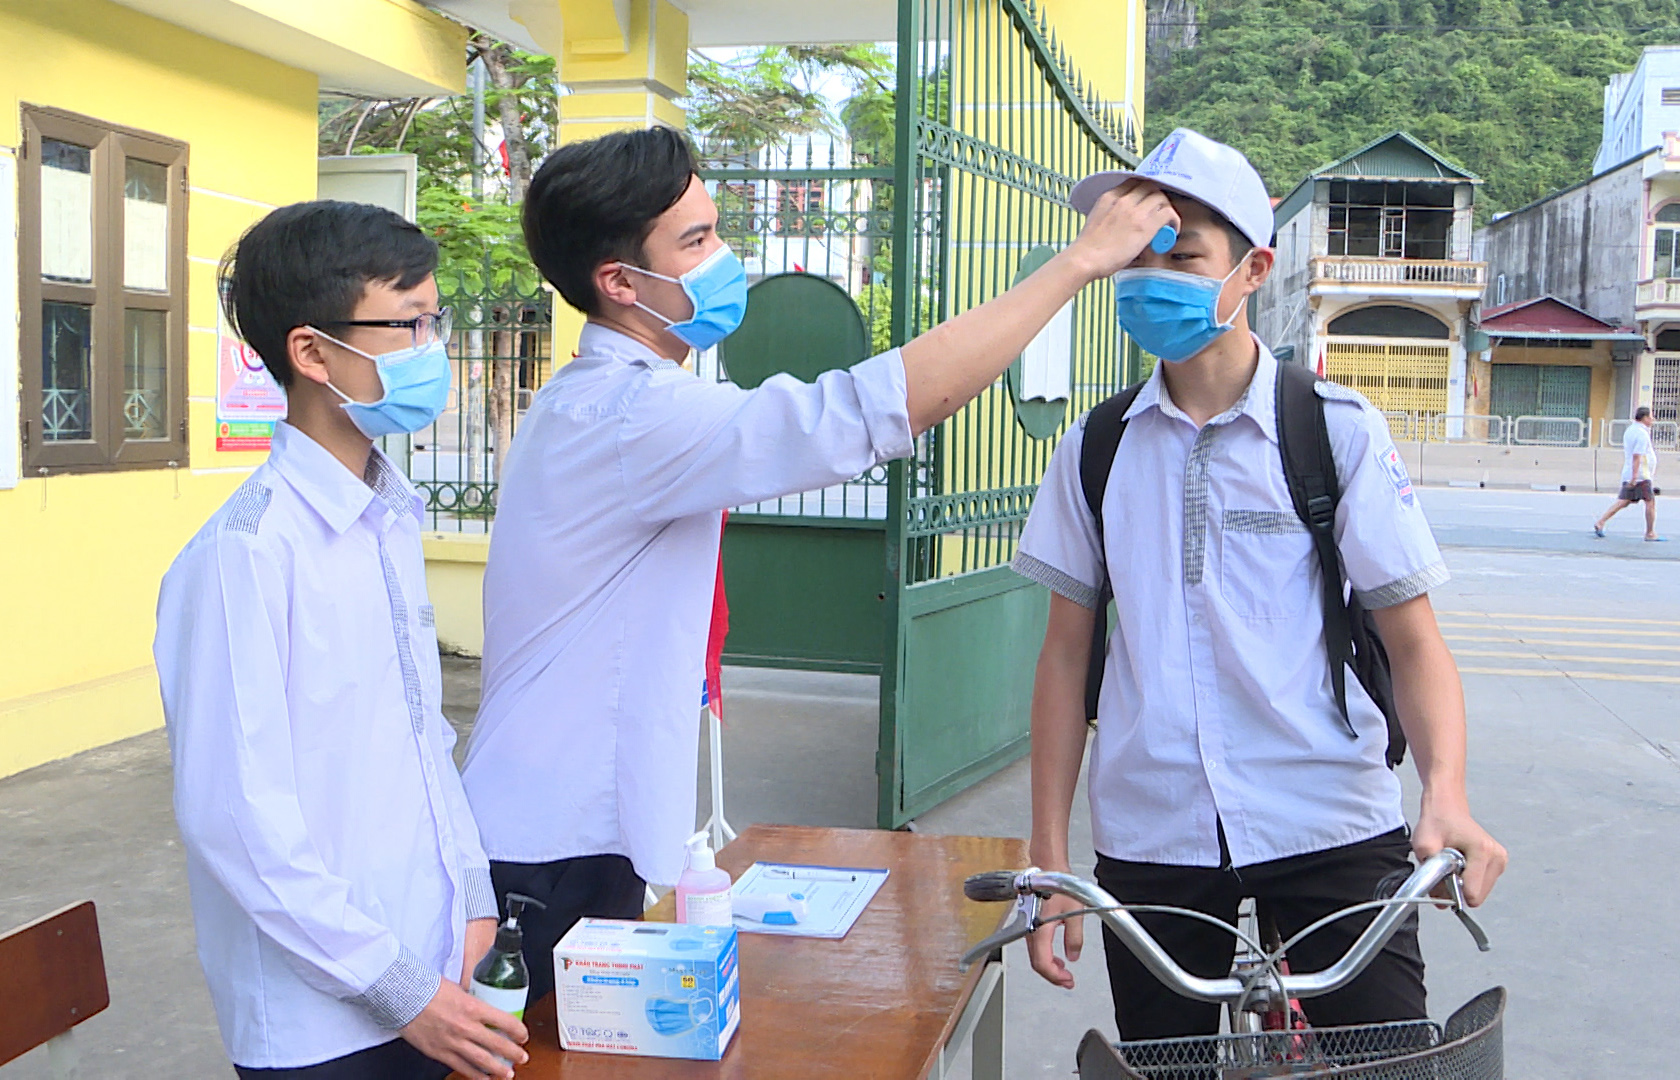 Trước khi vào trường, học sinh THCS Suối Khoáng (TP Cẩm Phả) được đo thân nhiệt và sát khuẩn tay, đảm bảo yêu cầu phòng chống dịch.